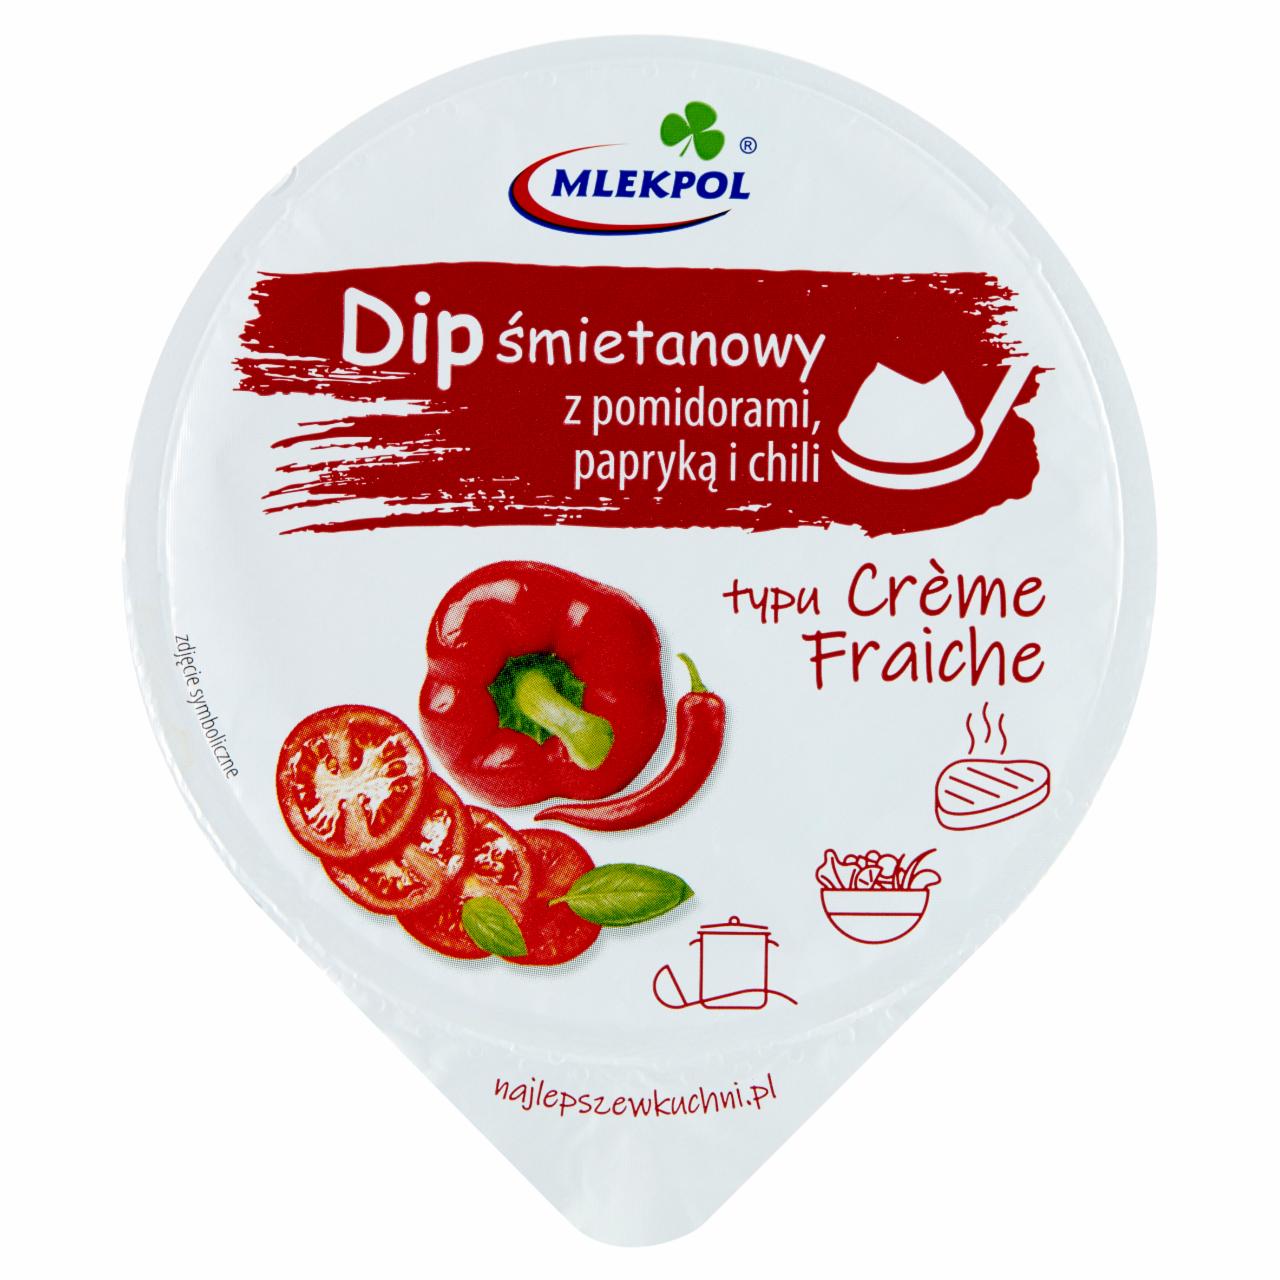 Zdjęcia - Mlekpol Dip śmietanowy z pomidorami papryką i chili typu Crème Fraiche 180 g